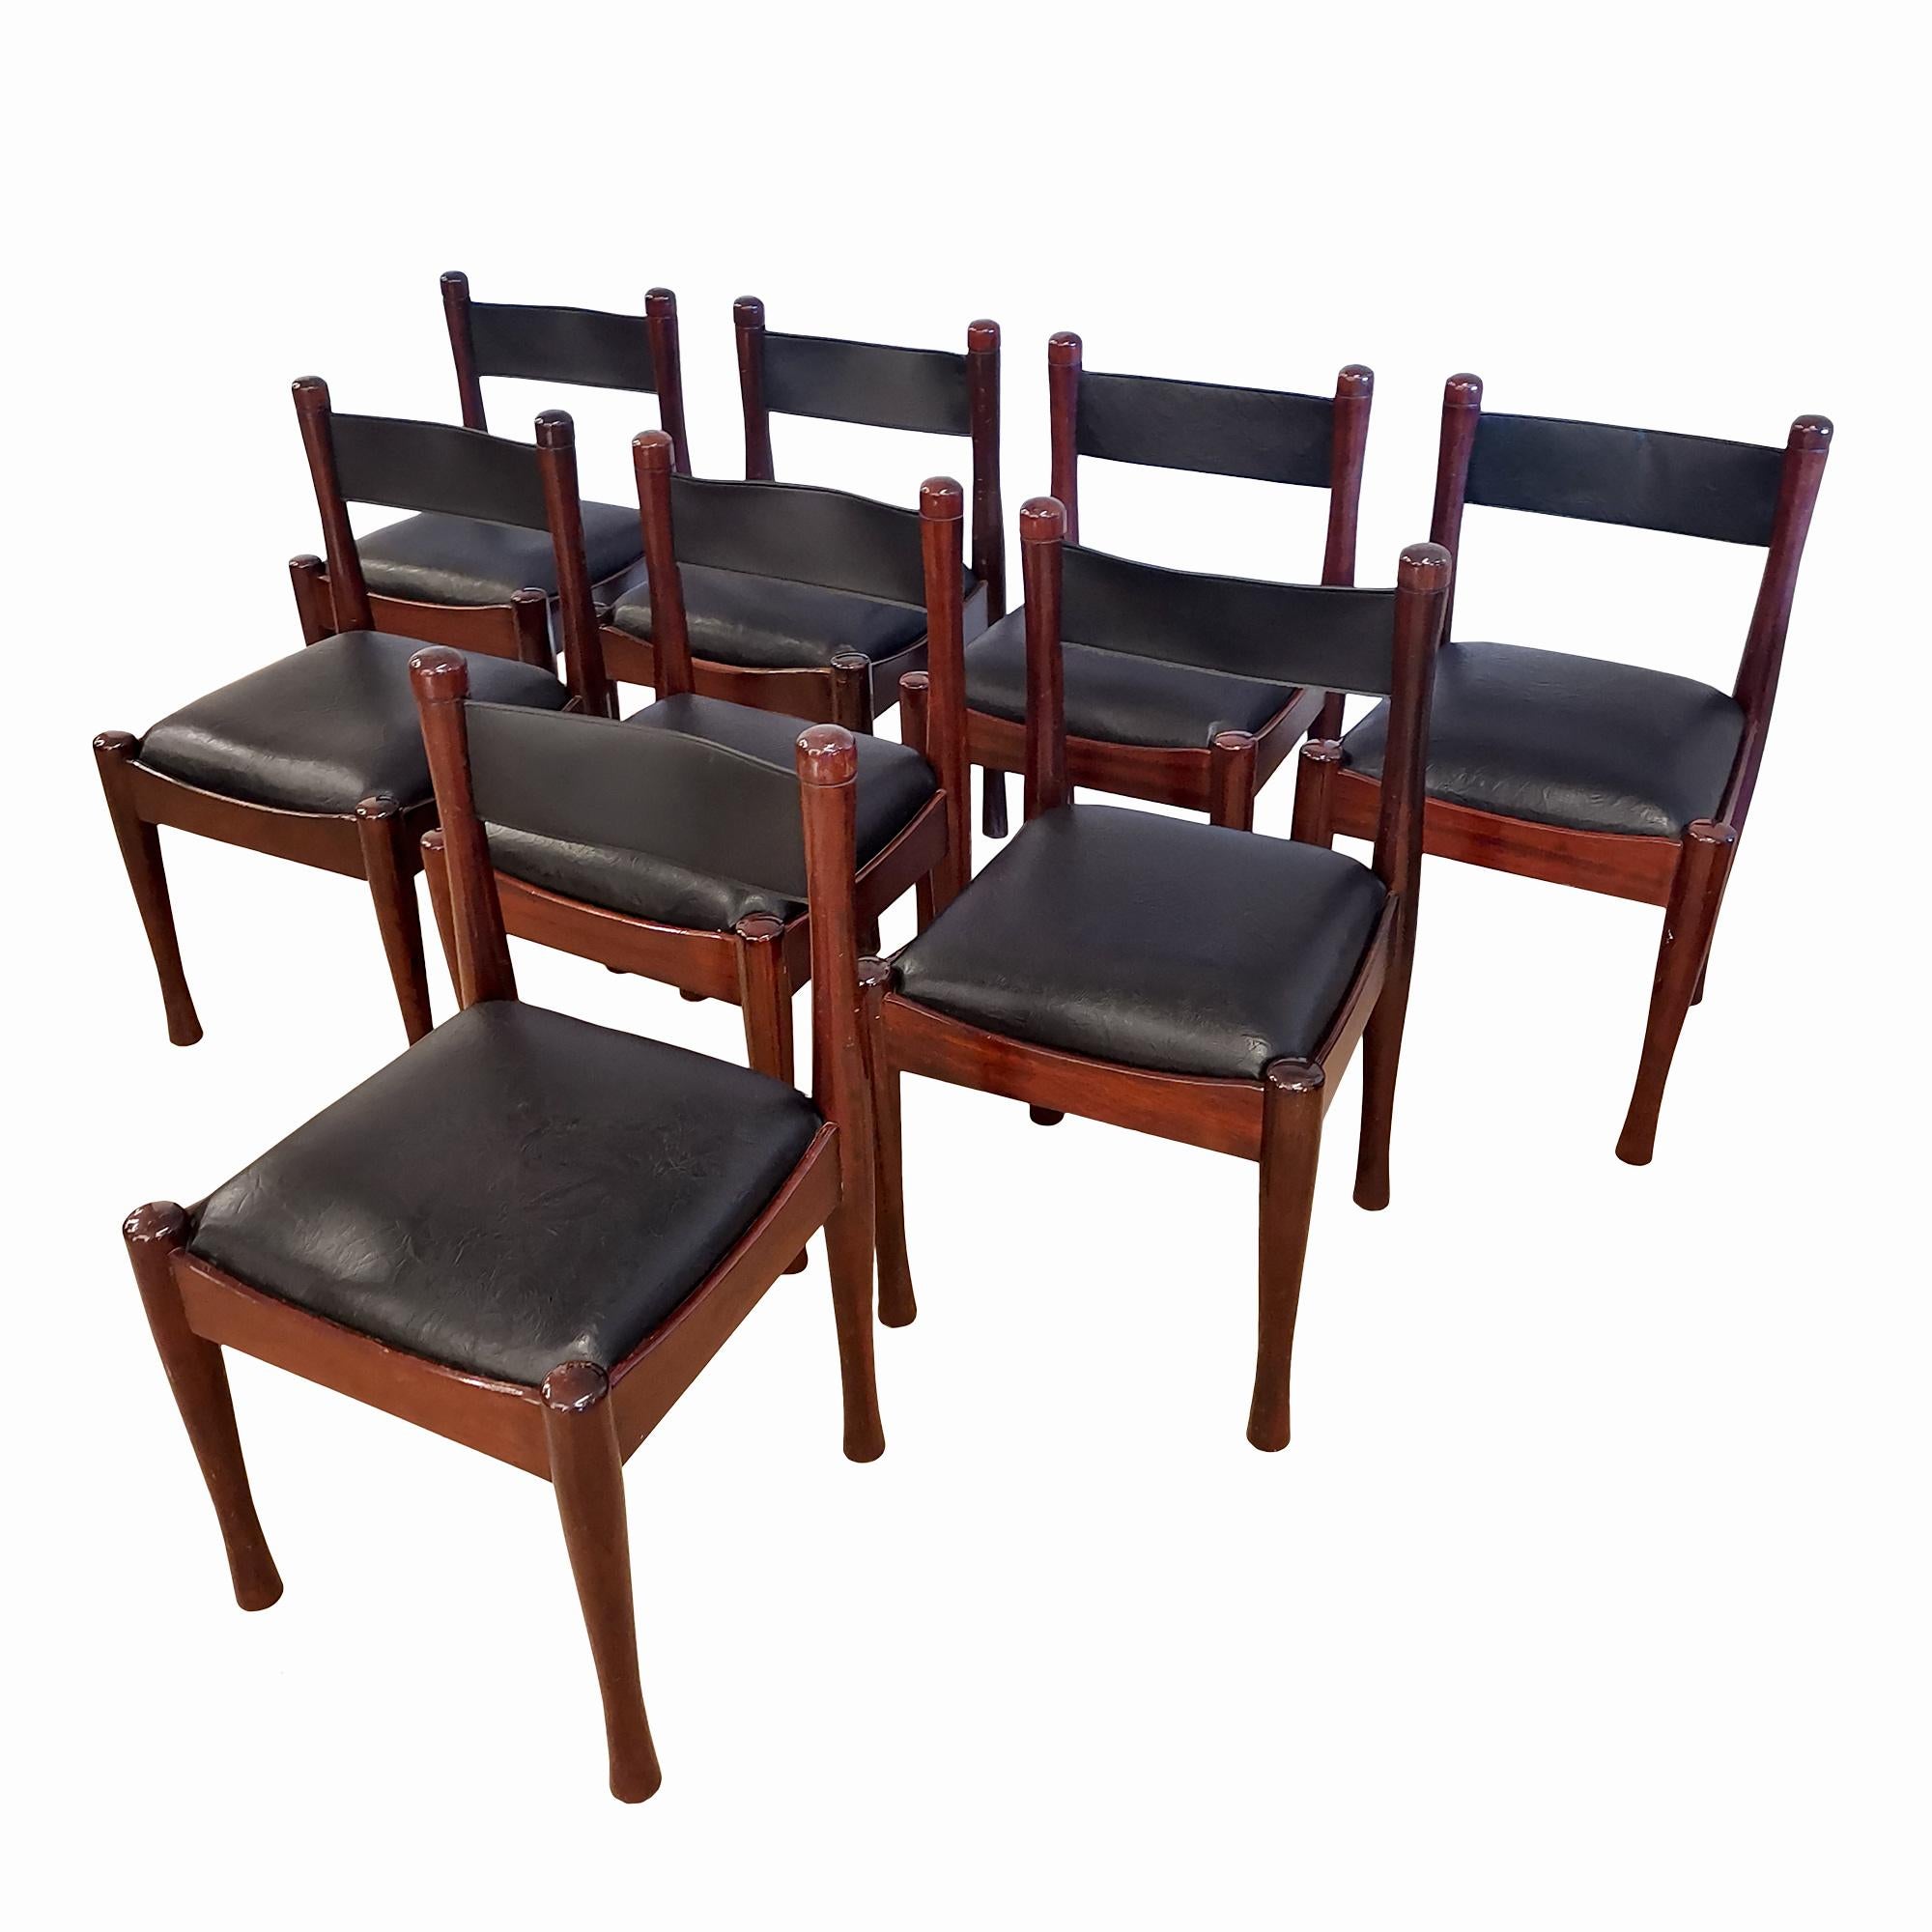 Ensemble de huit chaises en acajou massif, assise et dossier en simili cuir. Très bonne qualité. Etat original.

Design/One : Silvio Coppola pour Bernini.

Italie, 1970.

